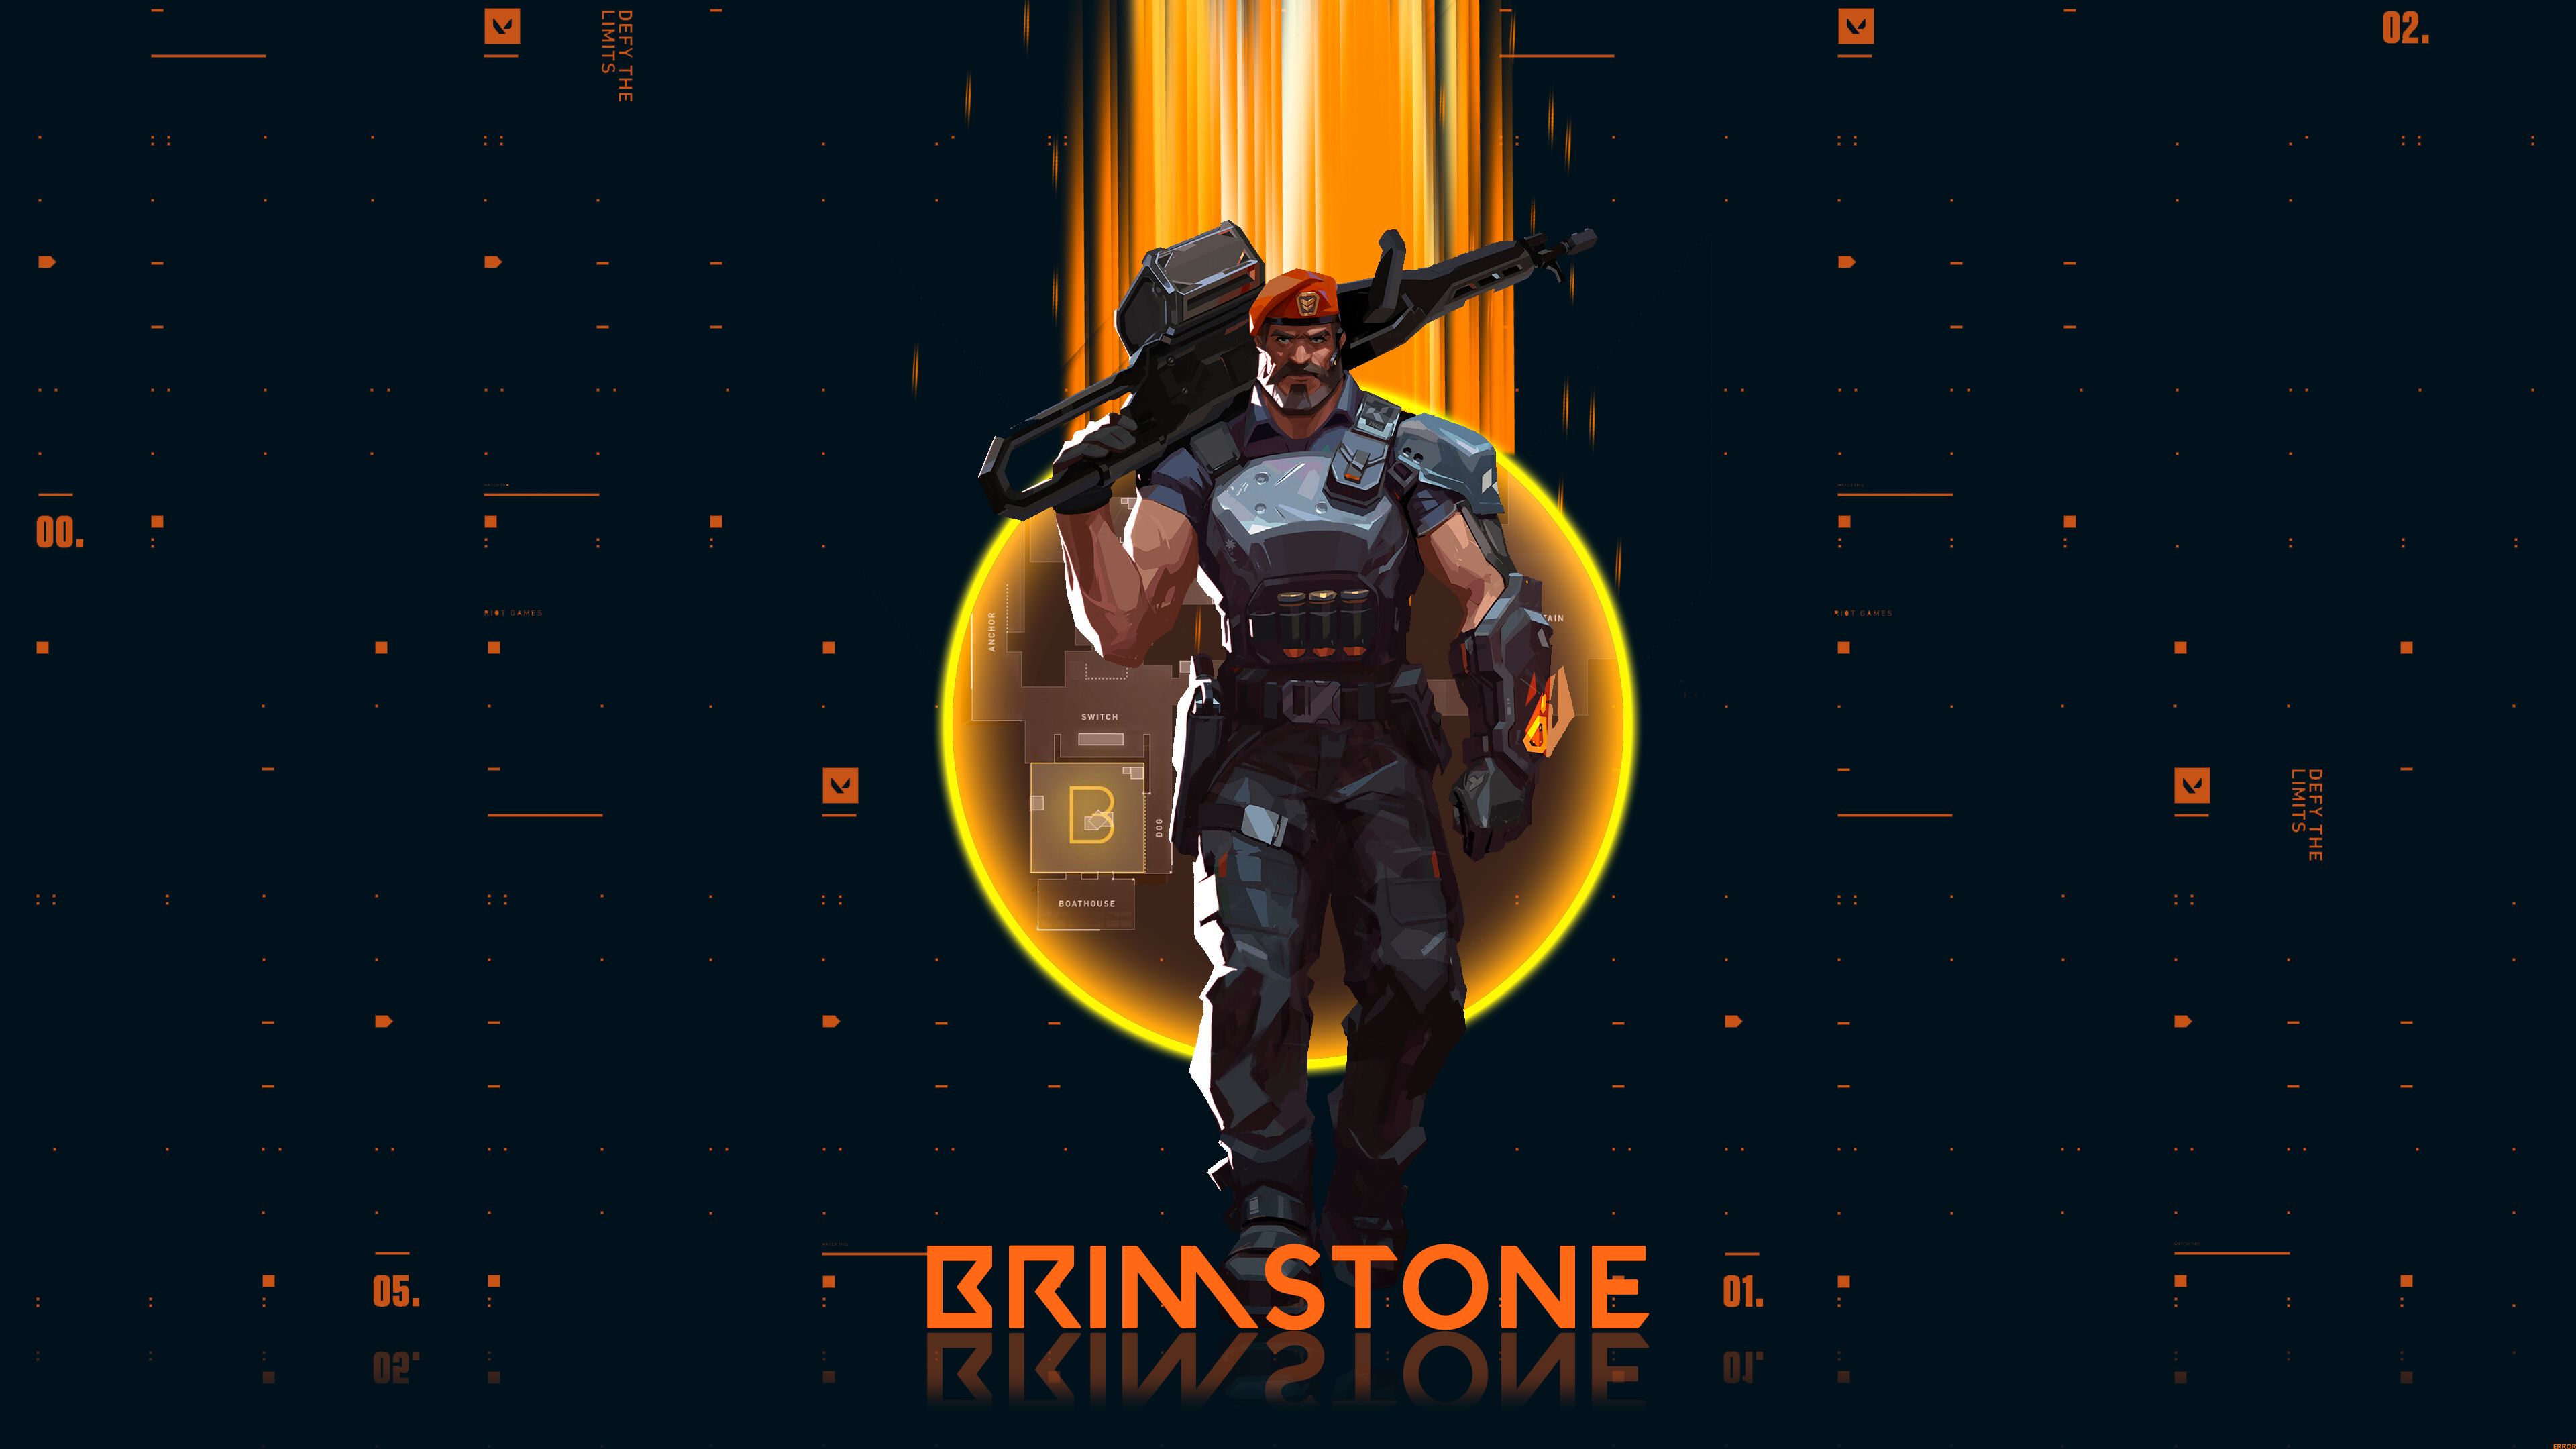 brimstone (valorant), valorant, video game